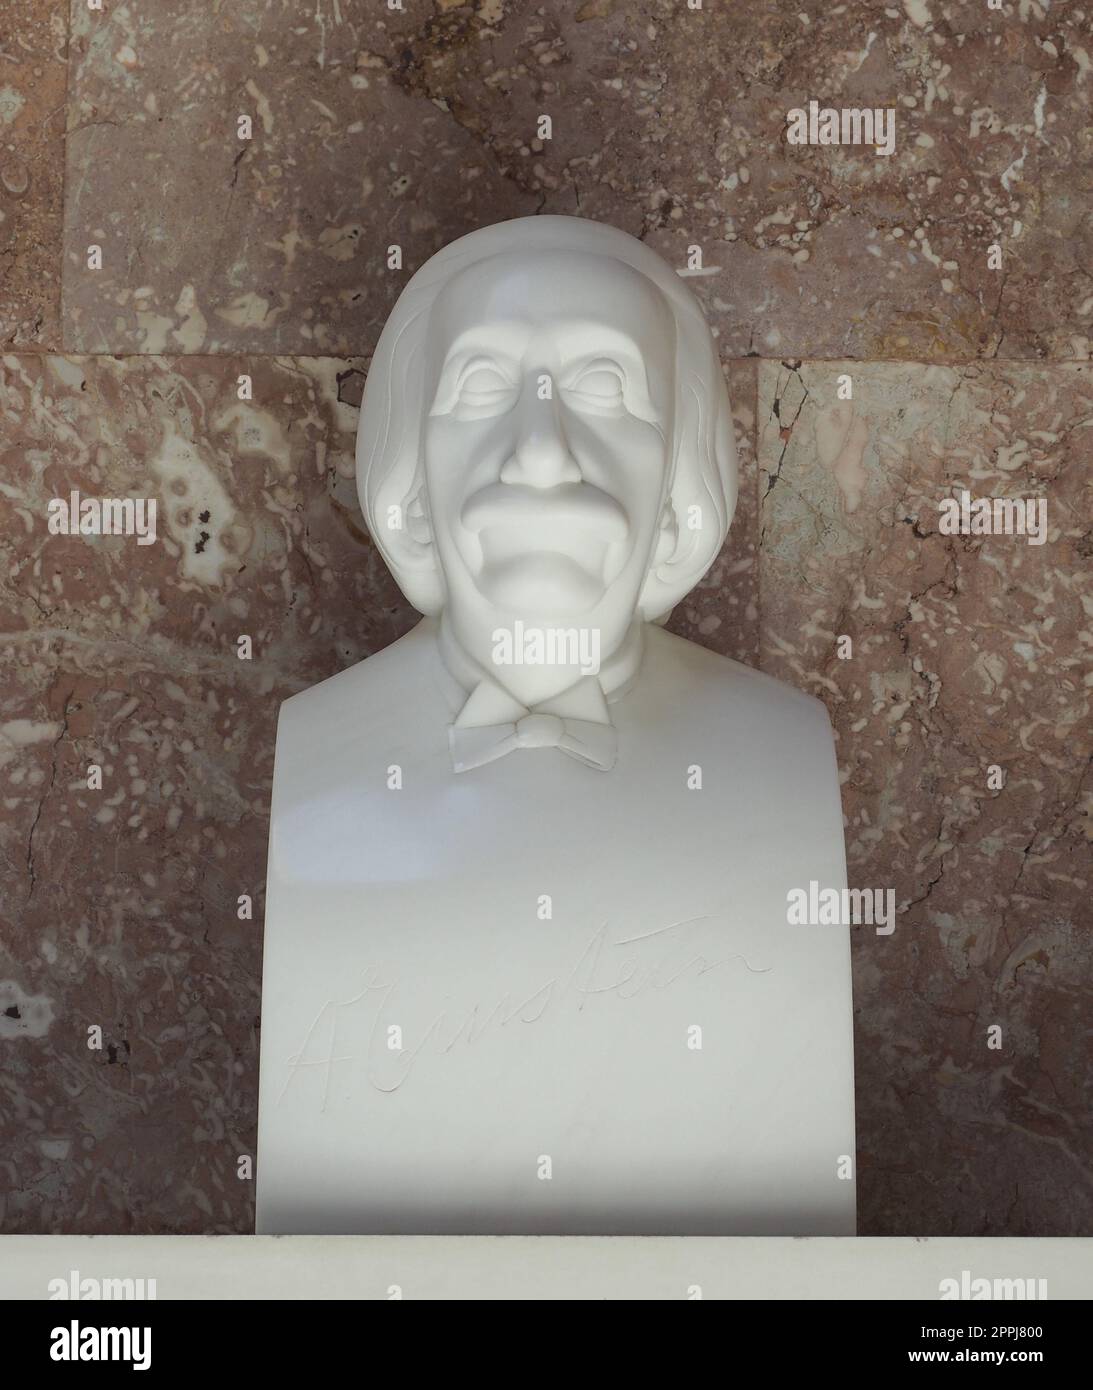 Bust of Albert Einstein at Walhalla temple by sculptor Uhlig in Donaustauf Stock Photo